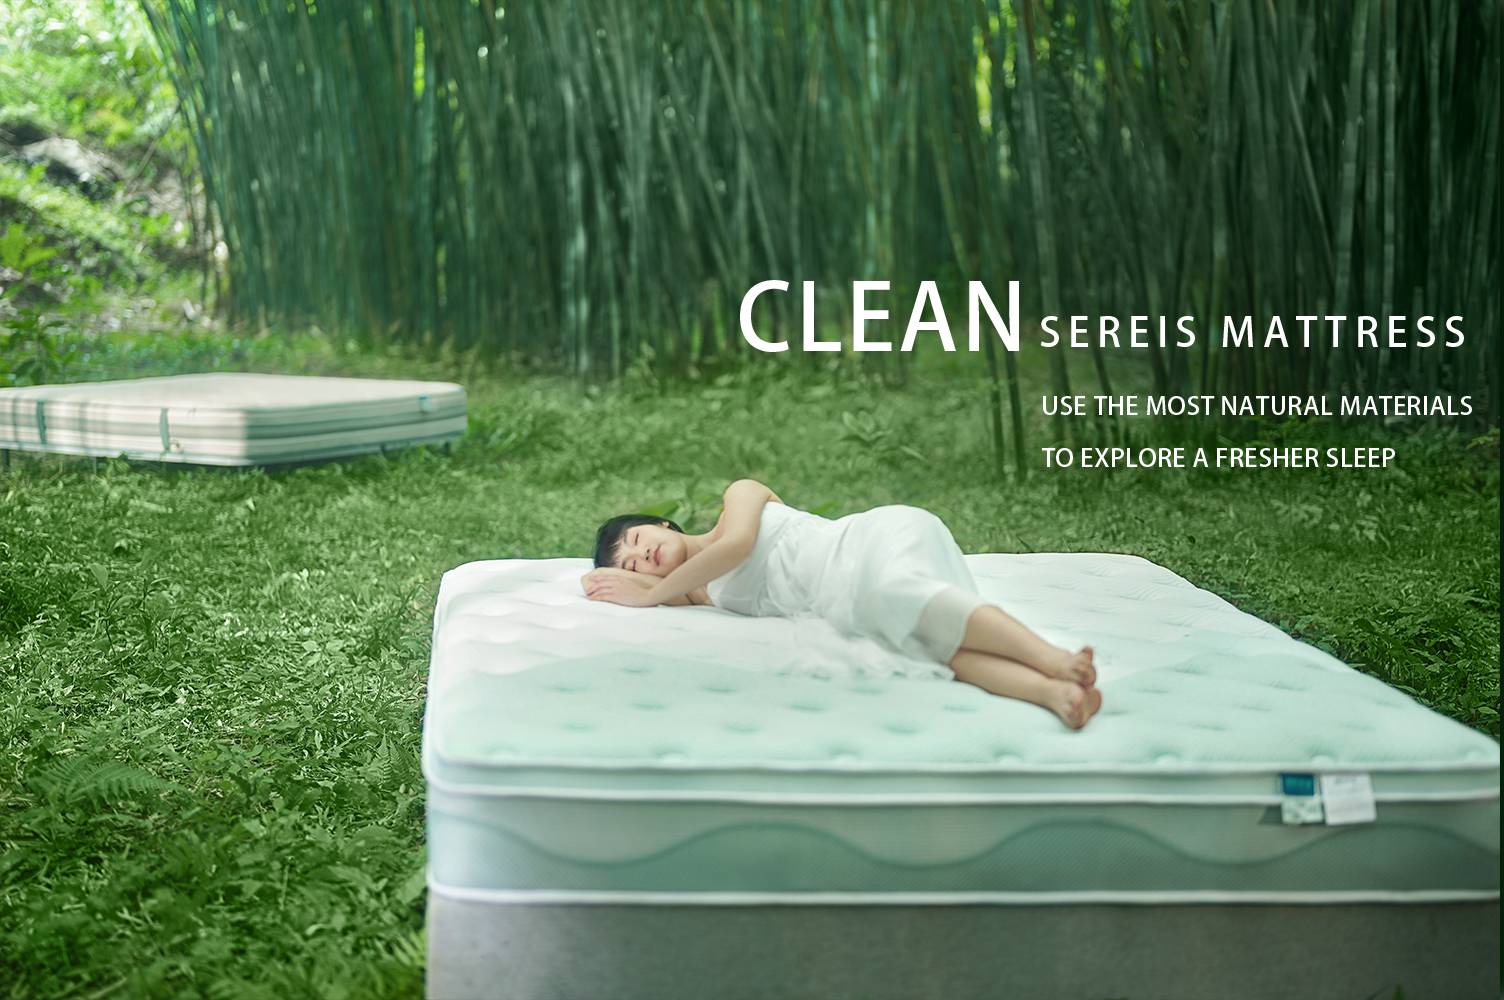 ที่นอน LINSY clean series, มอบประสบการณ์การนอนหลับที่สดชื่น